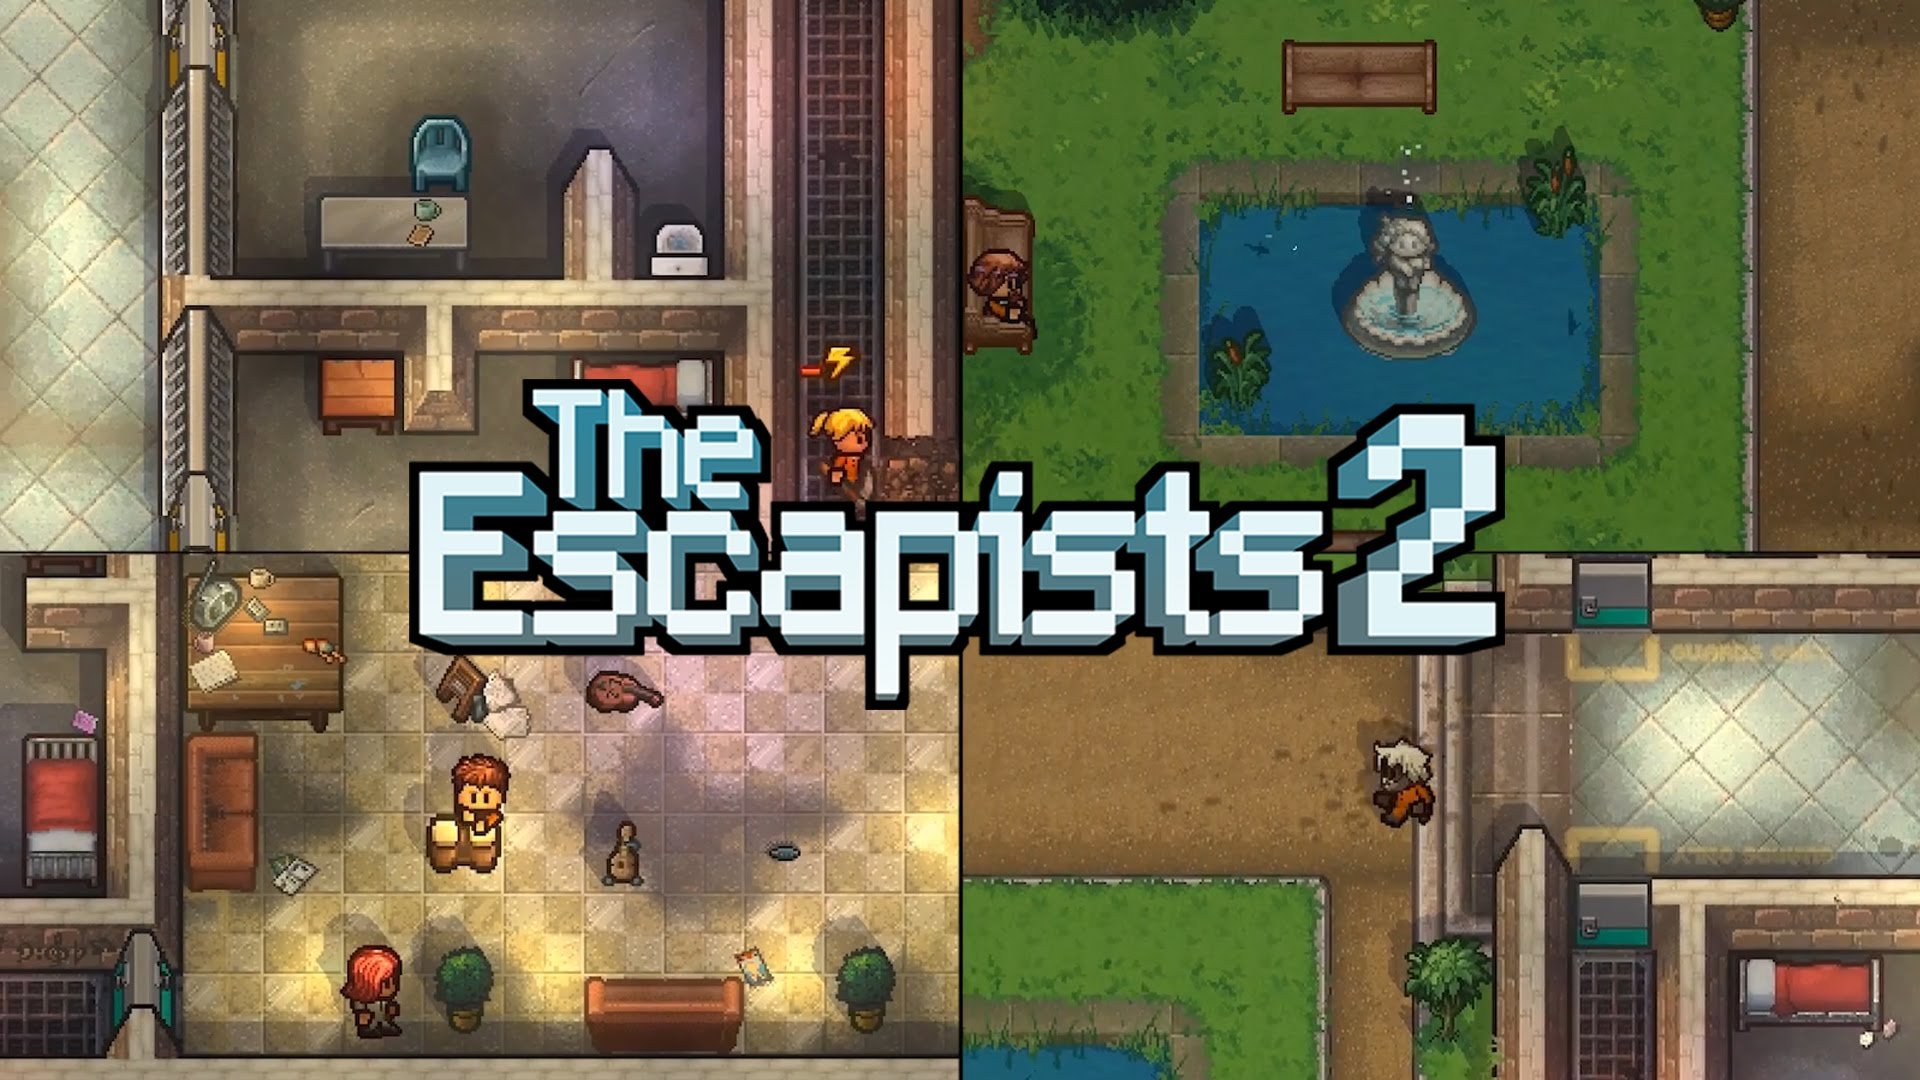 Пиксельная игра про тюрьму. The Escapists 2. Побег из тюрьмы игра пиксельная. The Escapists 2 на 2. The Escapists побег из тюрьмы.